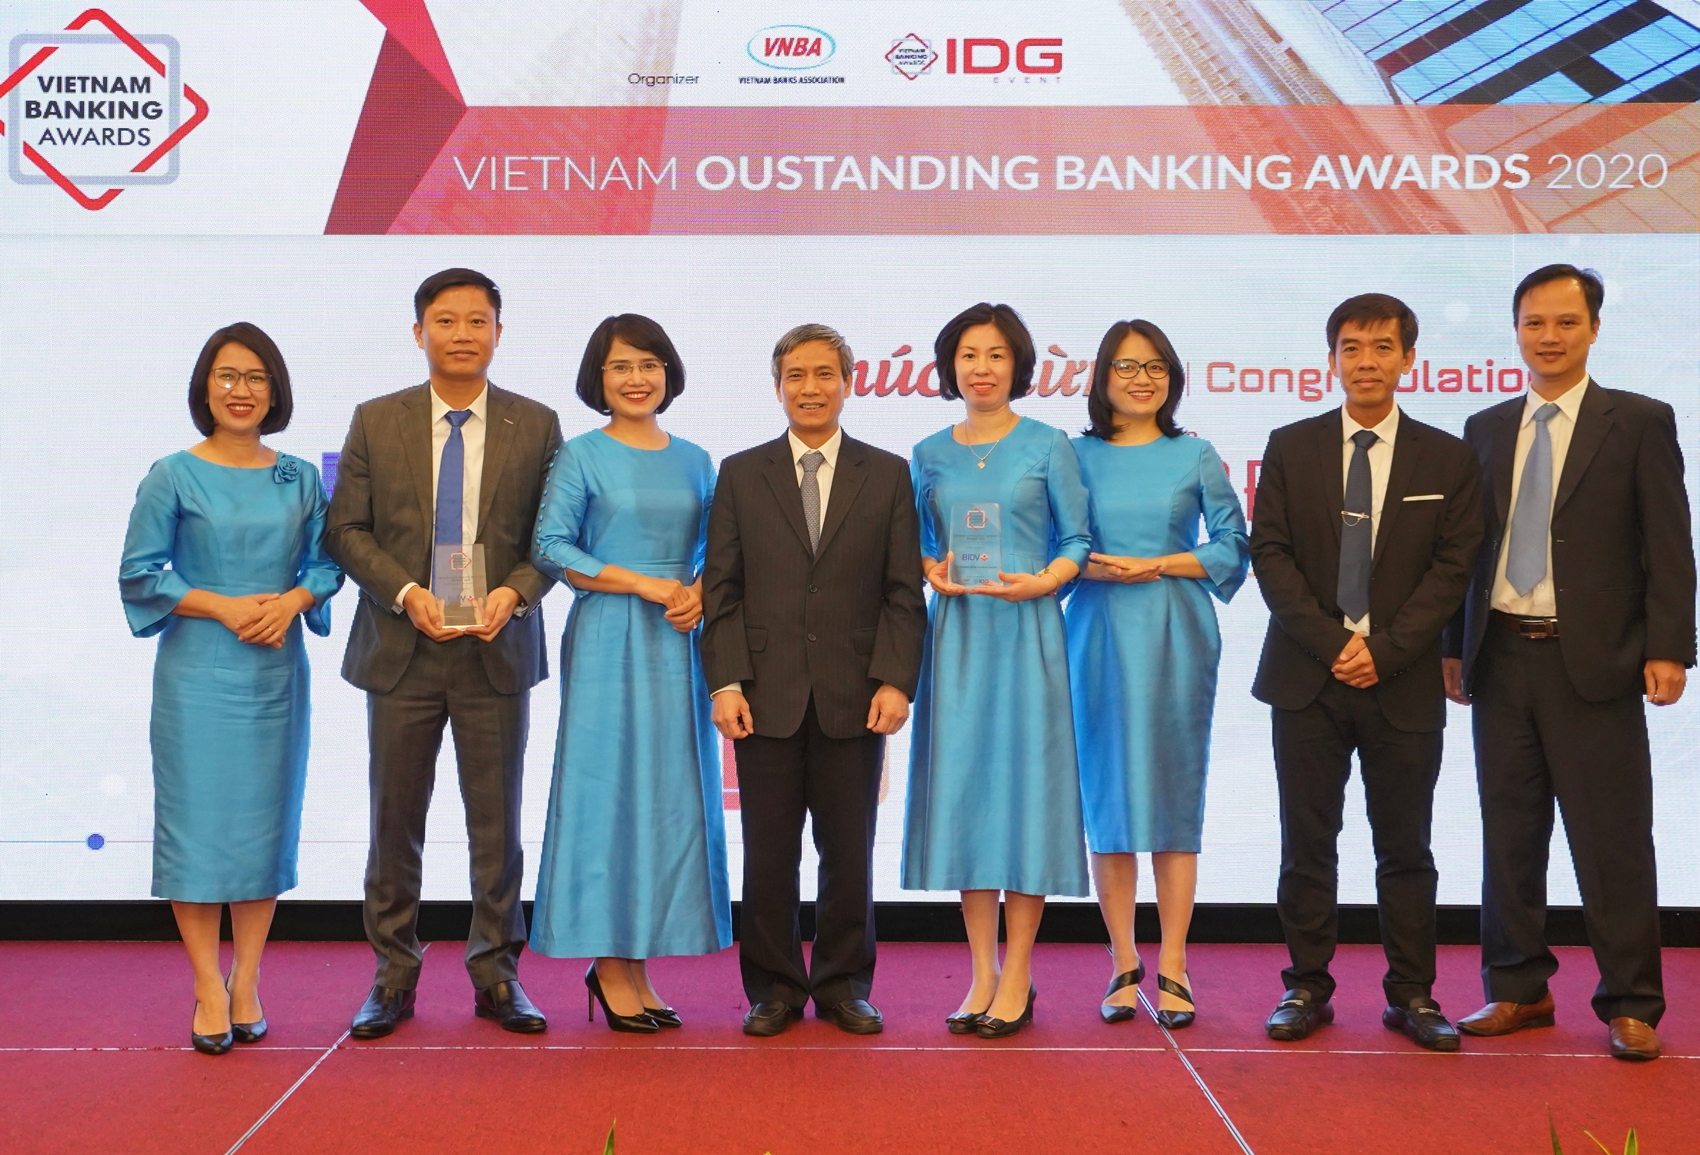 BIDV nhận cú đúp giải thưởng ngân hàng bán lẻ